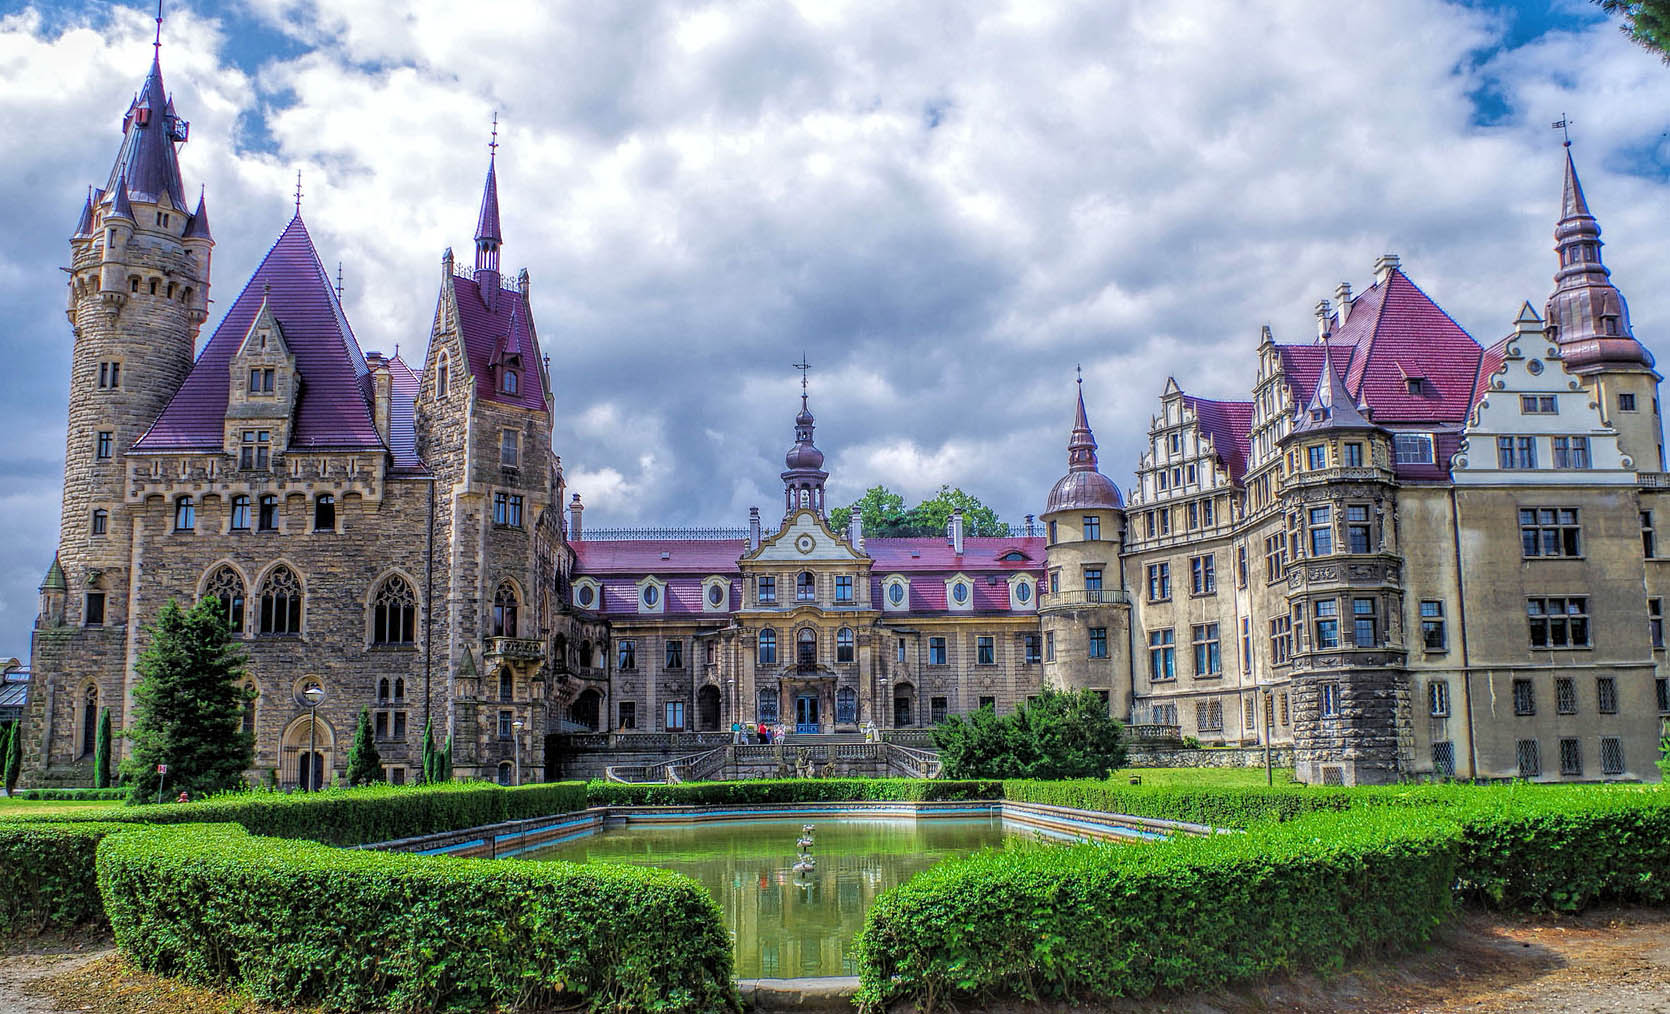 Zamek z bajki, czyli zamek w Mosznej | Dobra Szkoła Nowy Jork